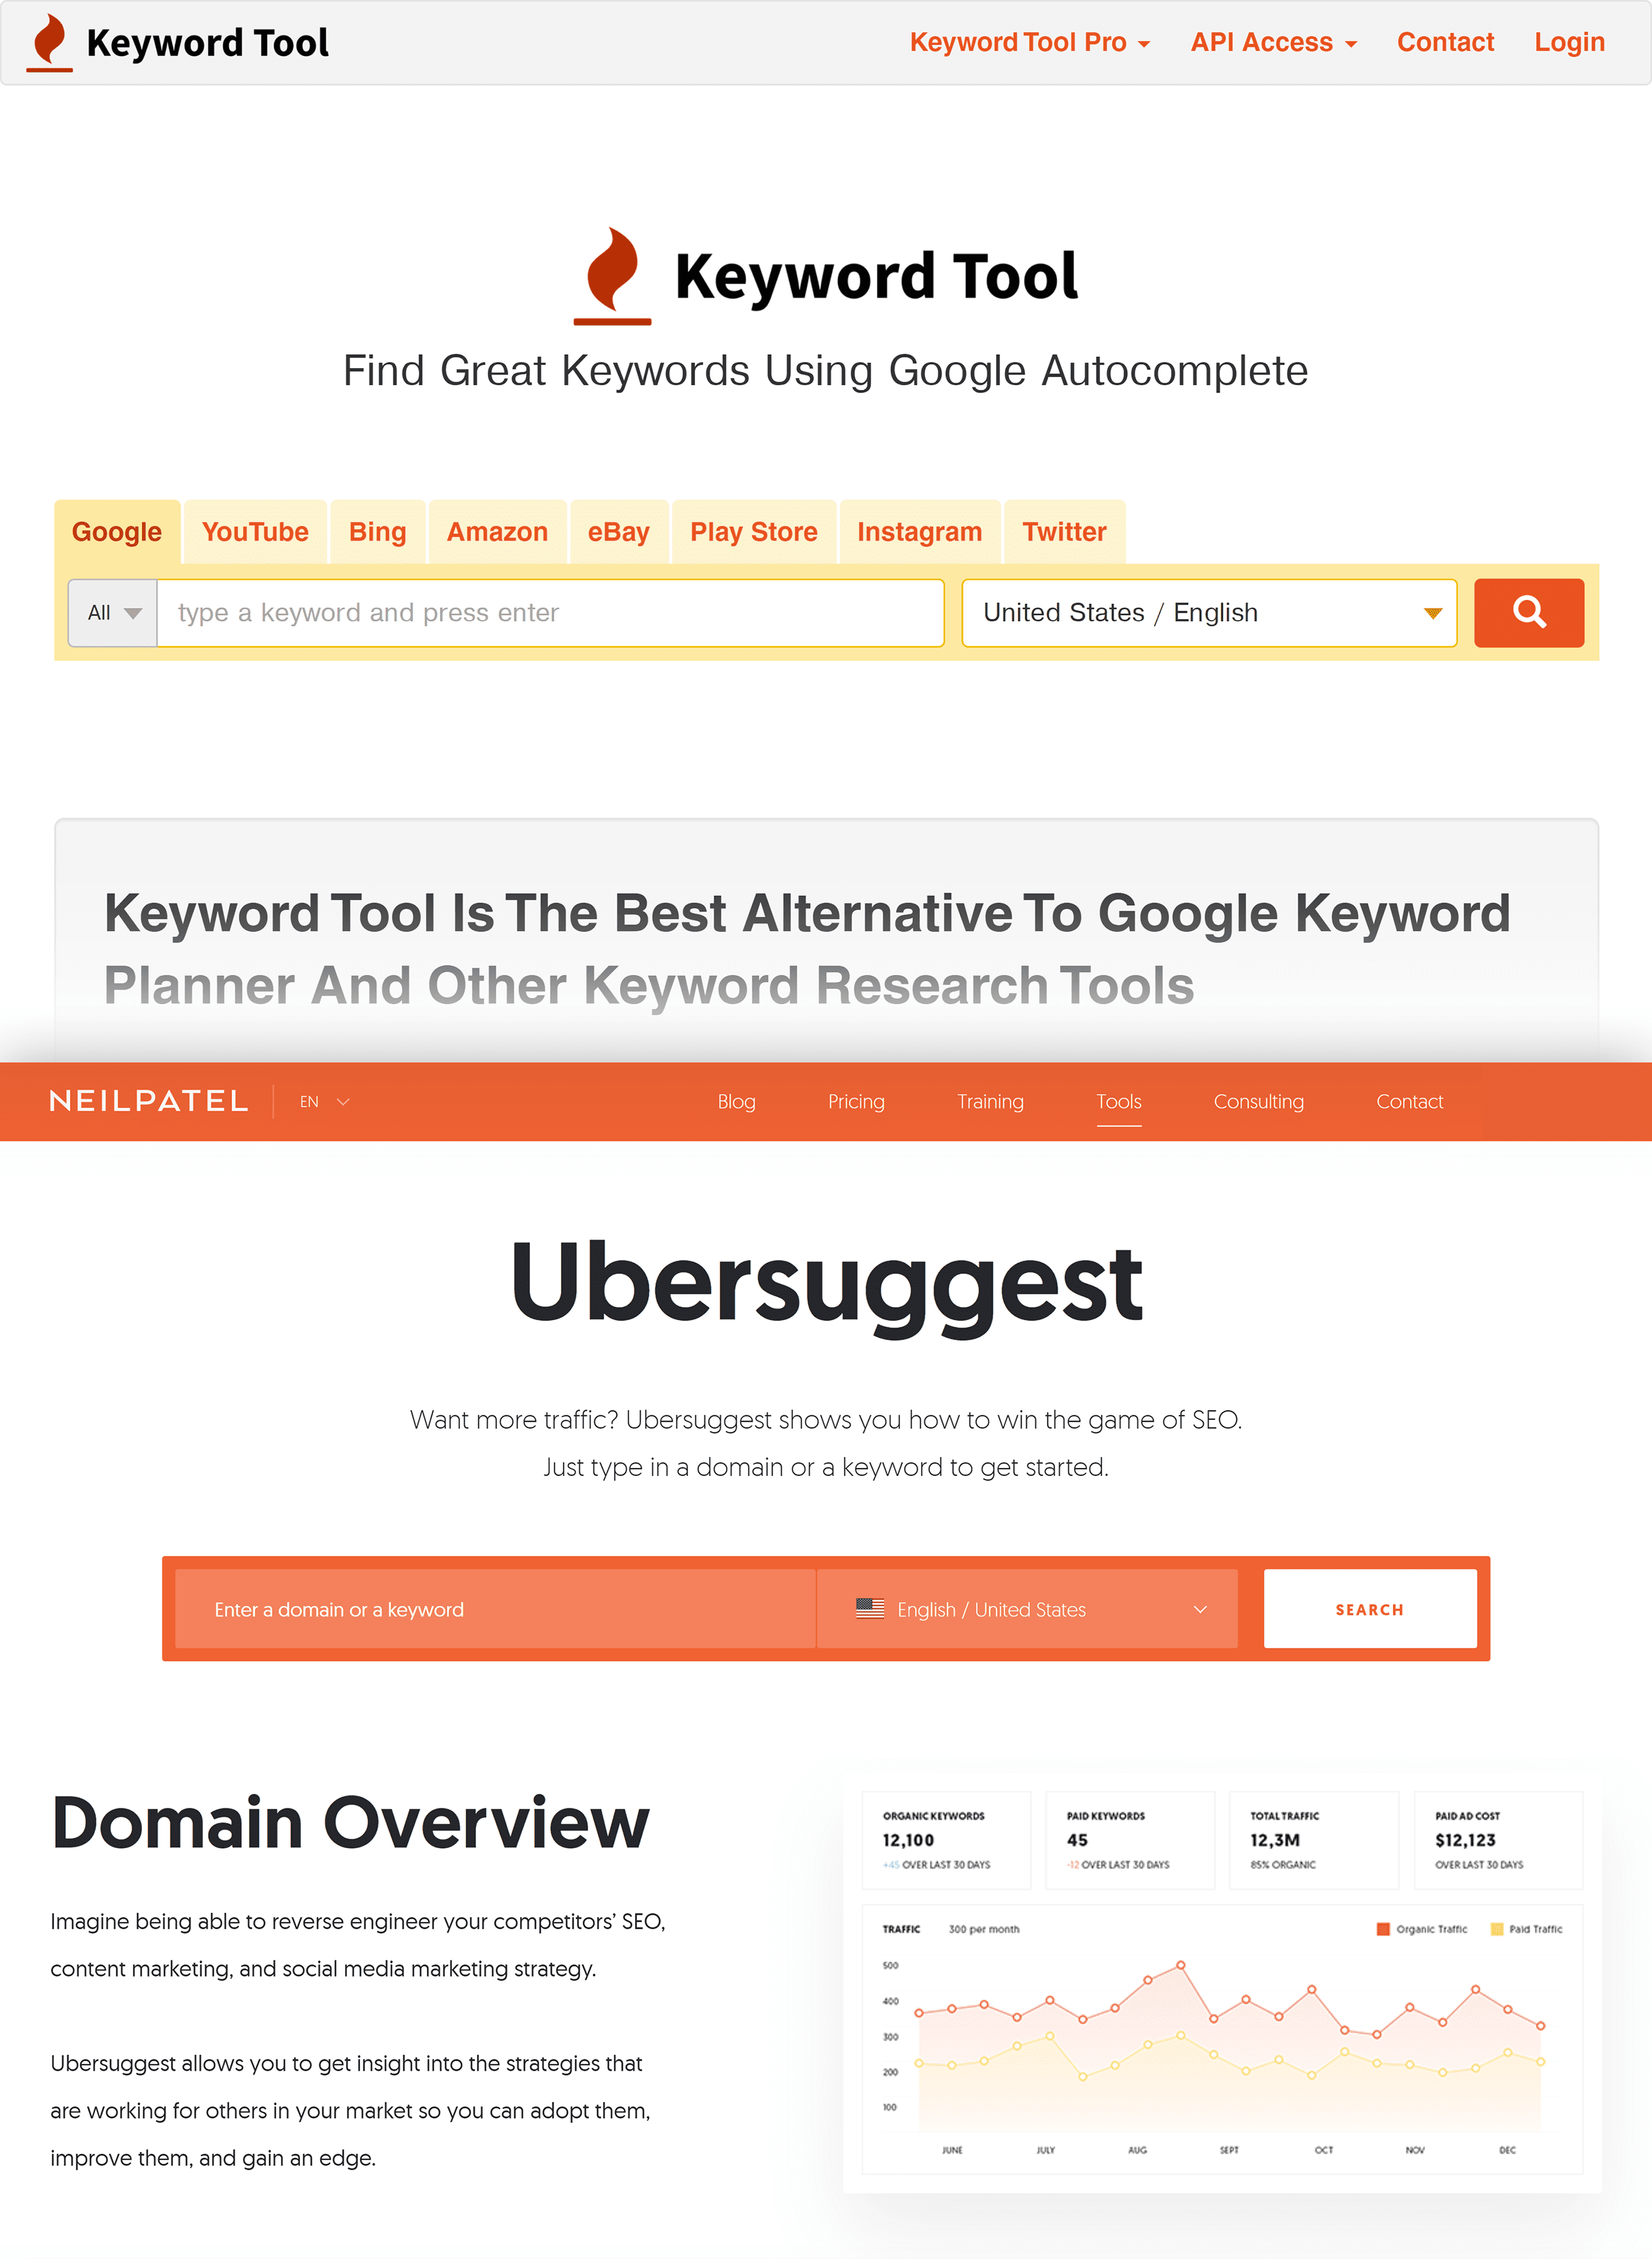 Keyword Tool and Ubersuggest